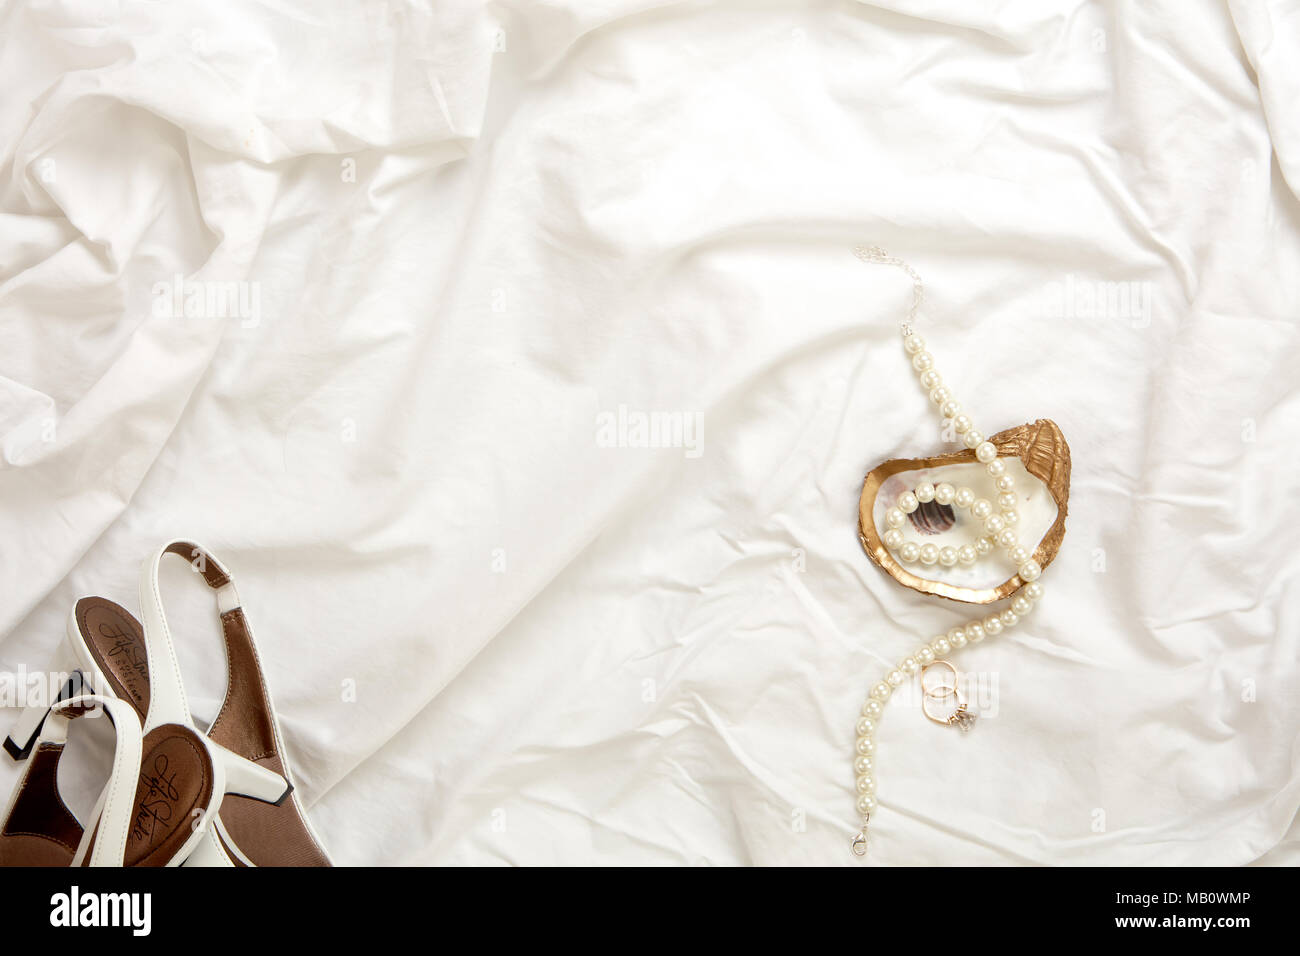 Gold oyster Schmuck Gericht mit Perlenkette, weiß Heels Schuhe und gold Engagement Ring und gold Hochzeit Band auf einem weißen Stoff Hintergrund Stockfoto